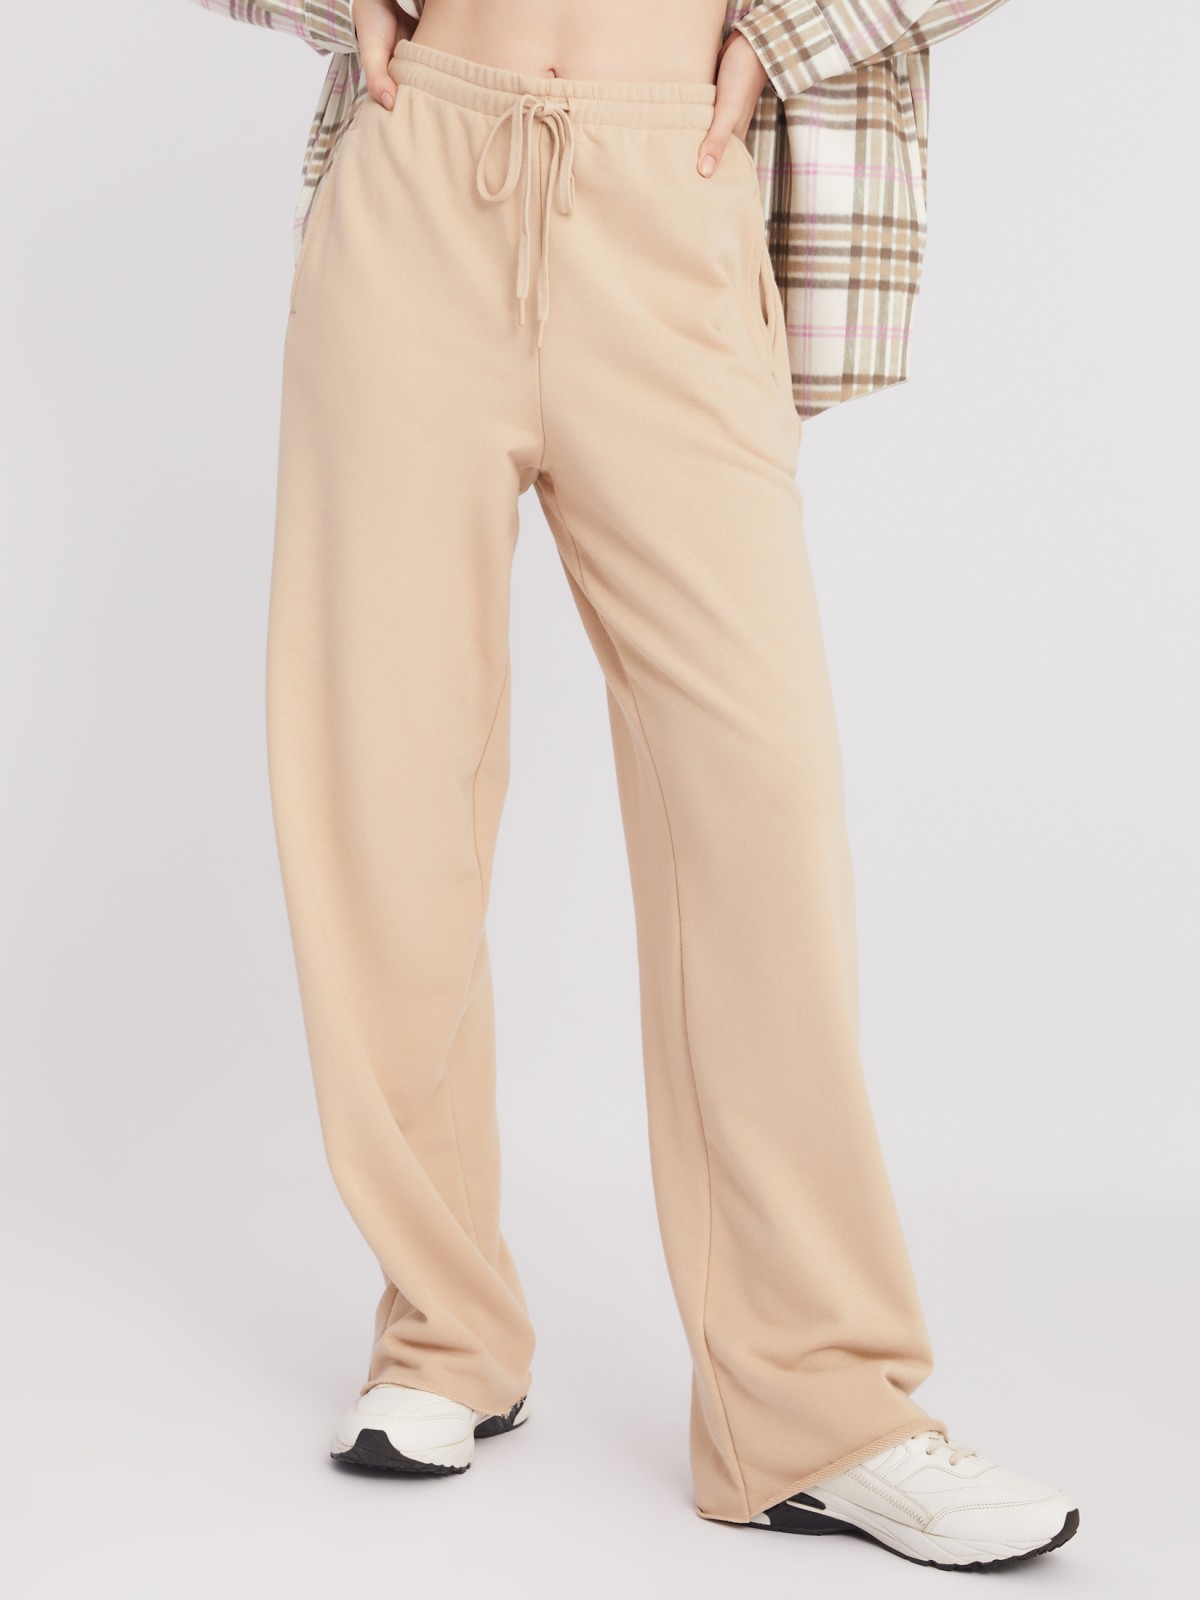 Трикотажные брюки прямого силуэта с поясом на резинке zolla 22332762L013, цвет бежевый, размер XS - фото 3